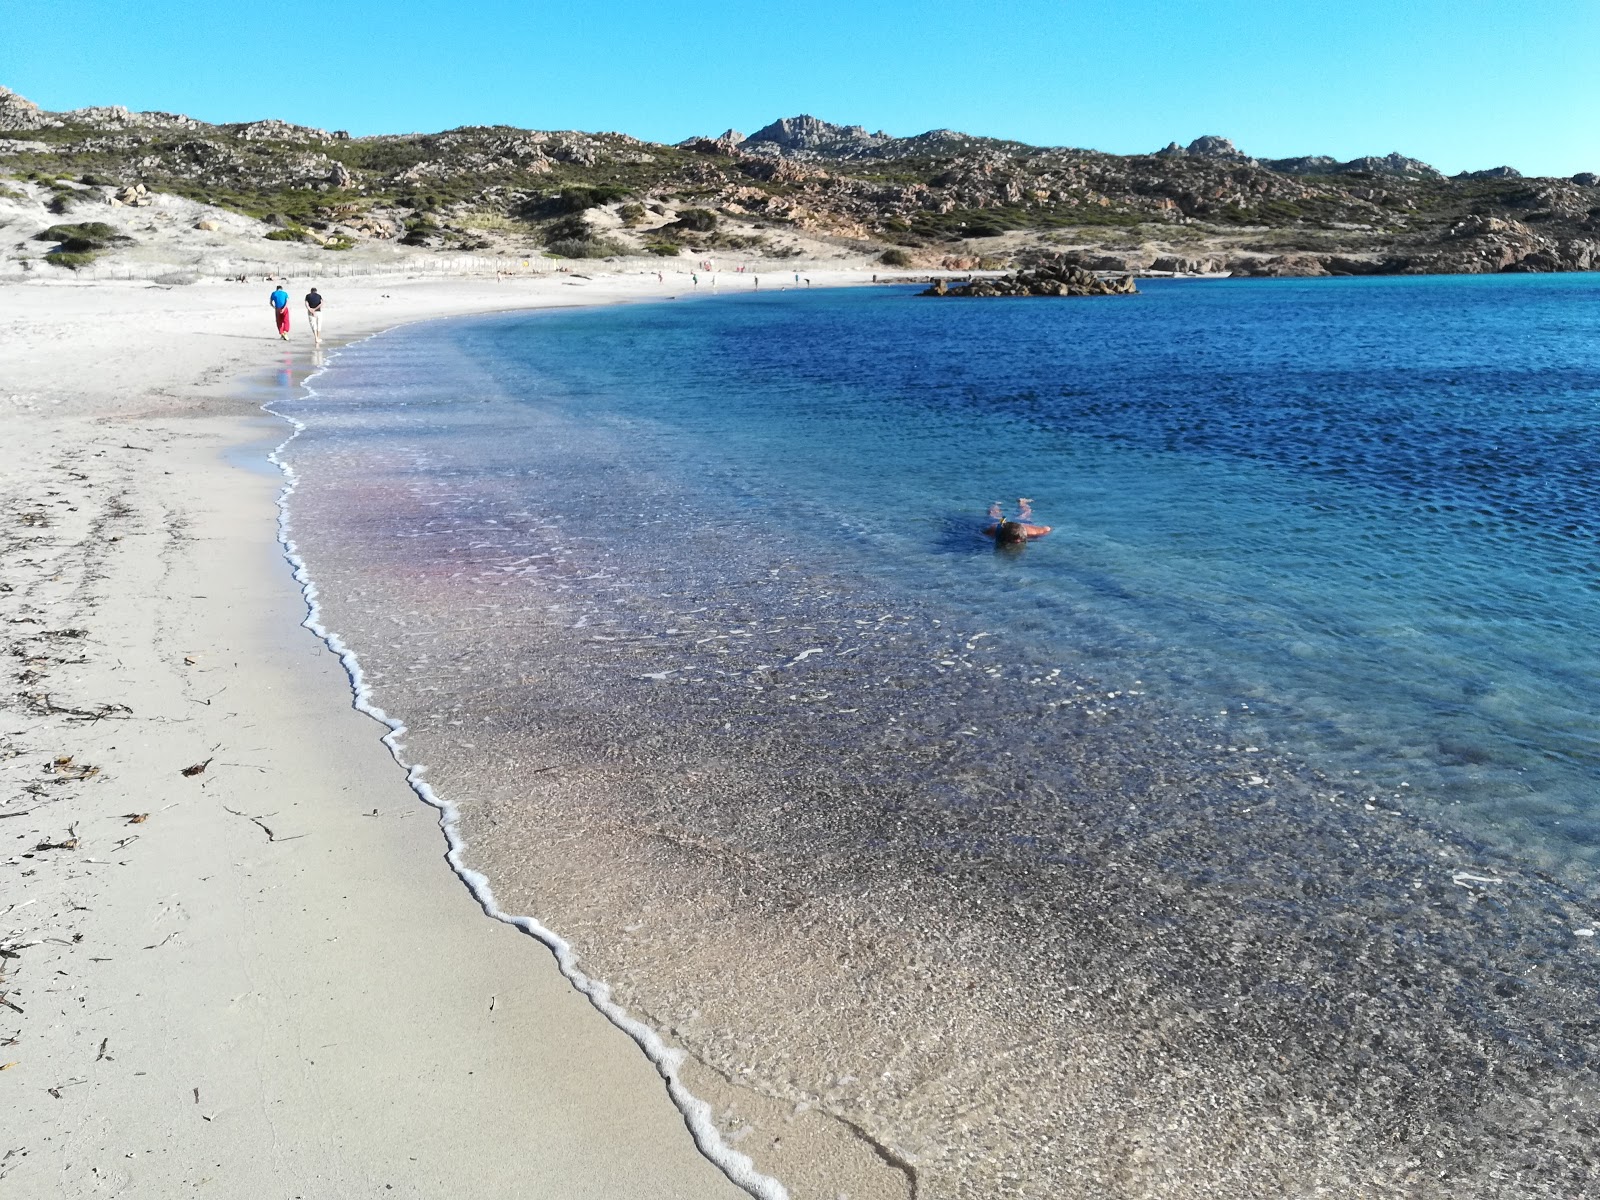 Cala Stagnolu'in fotoğrafı parlak kum yüzey ile